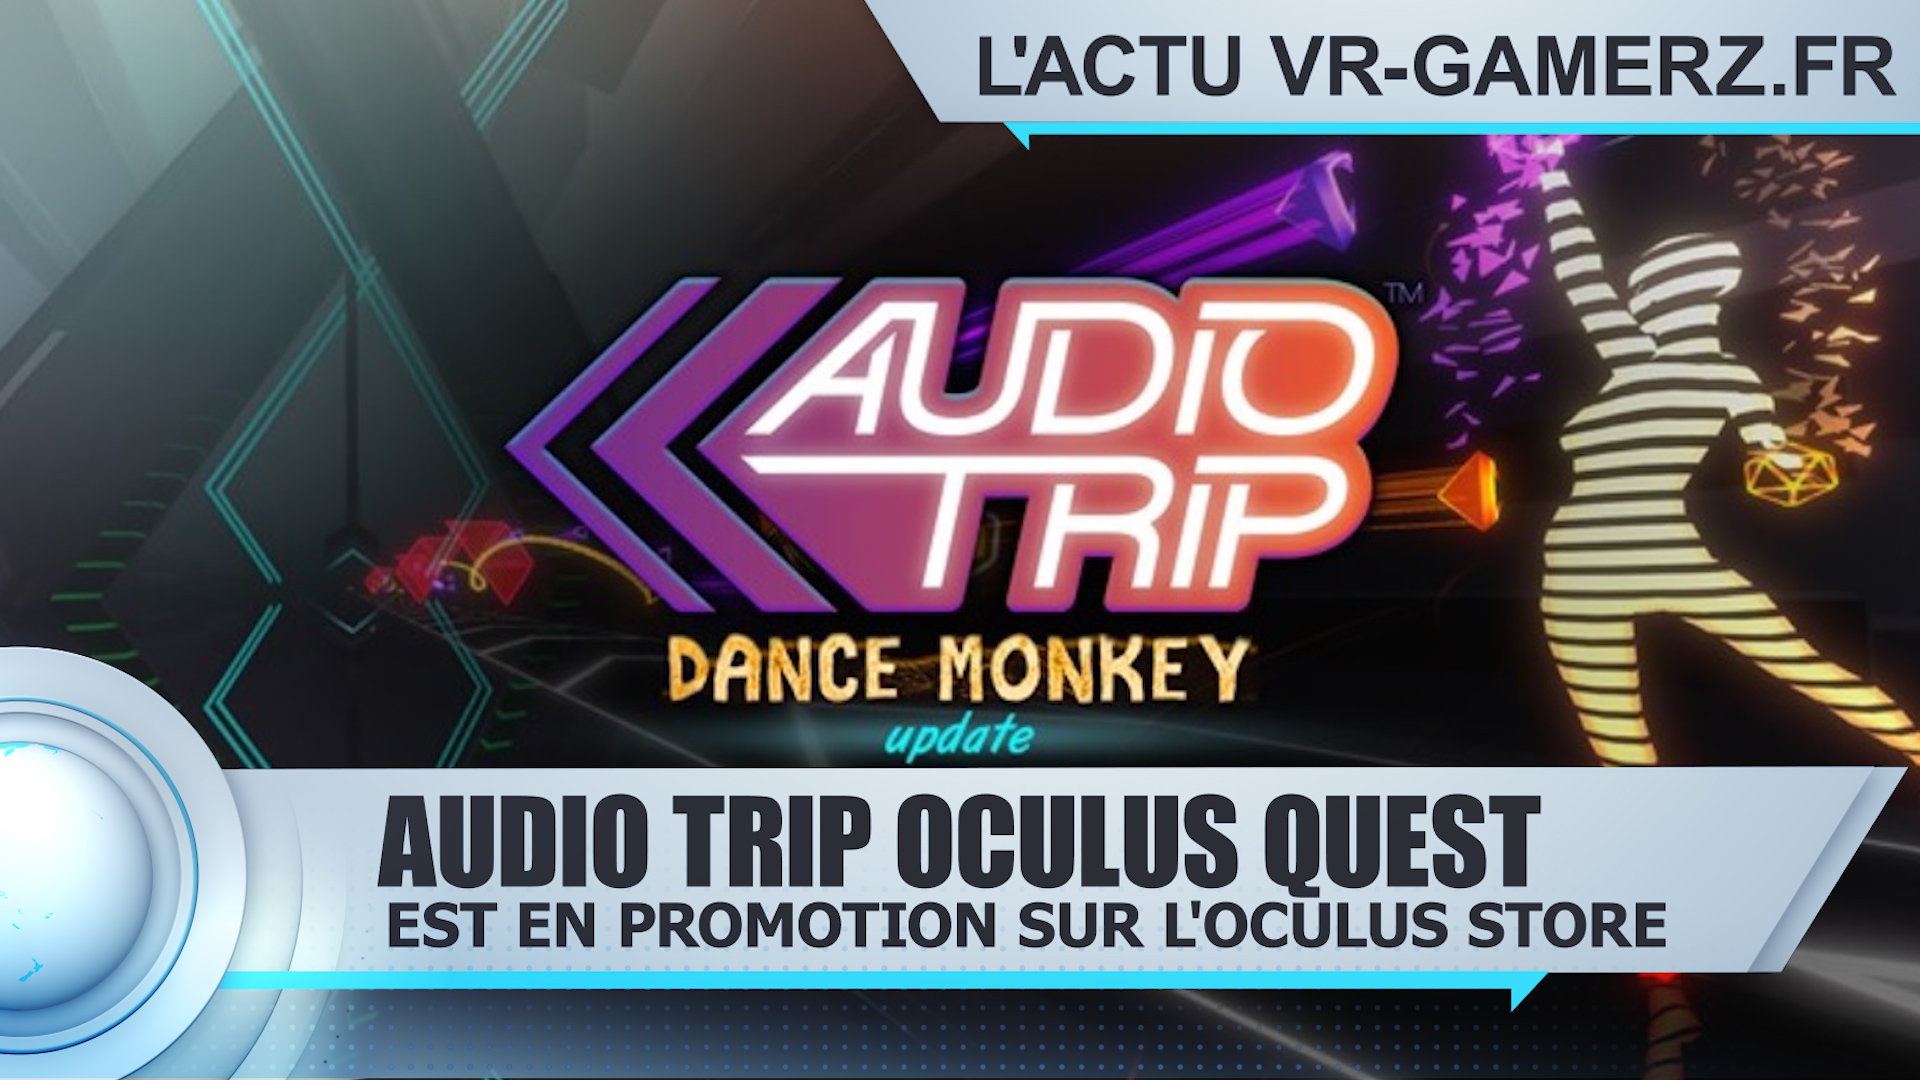 Audio trip est en promotion sur Oculus quest